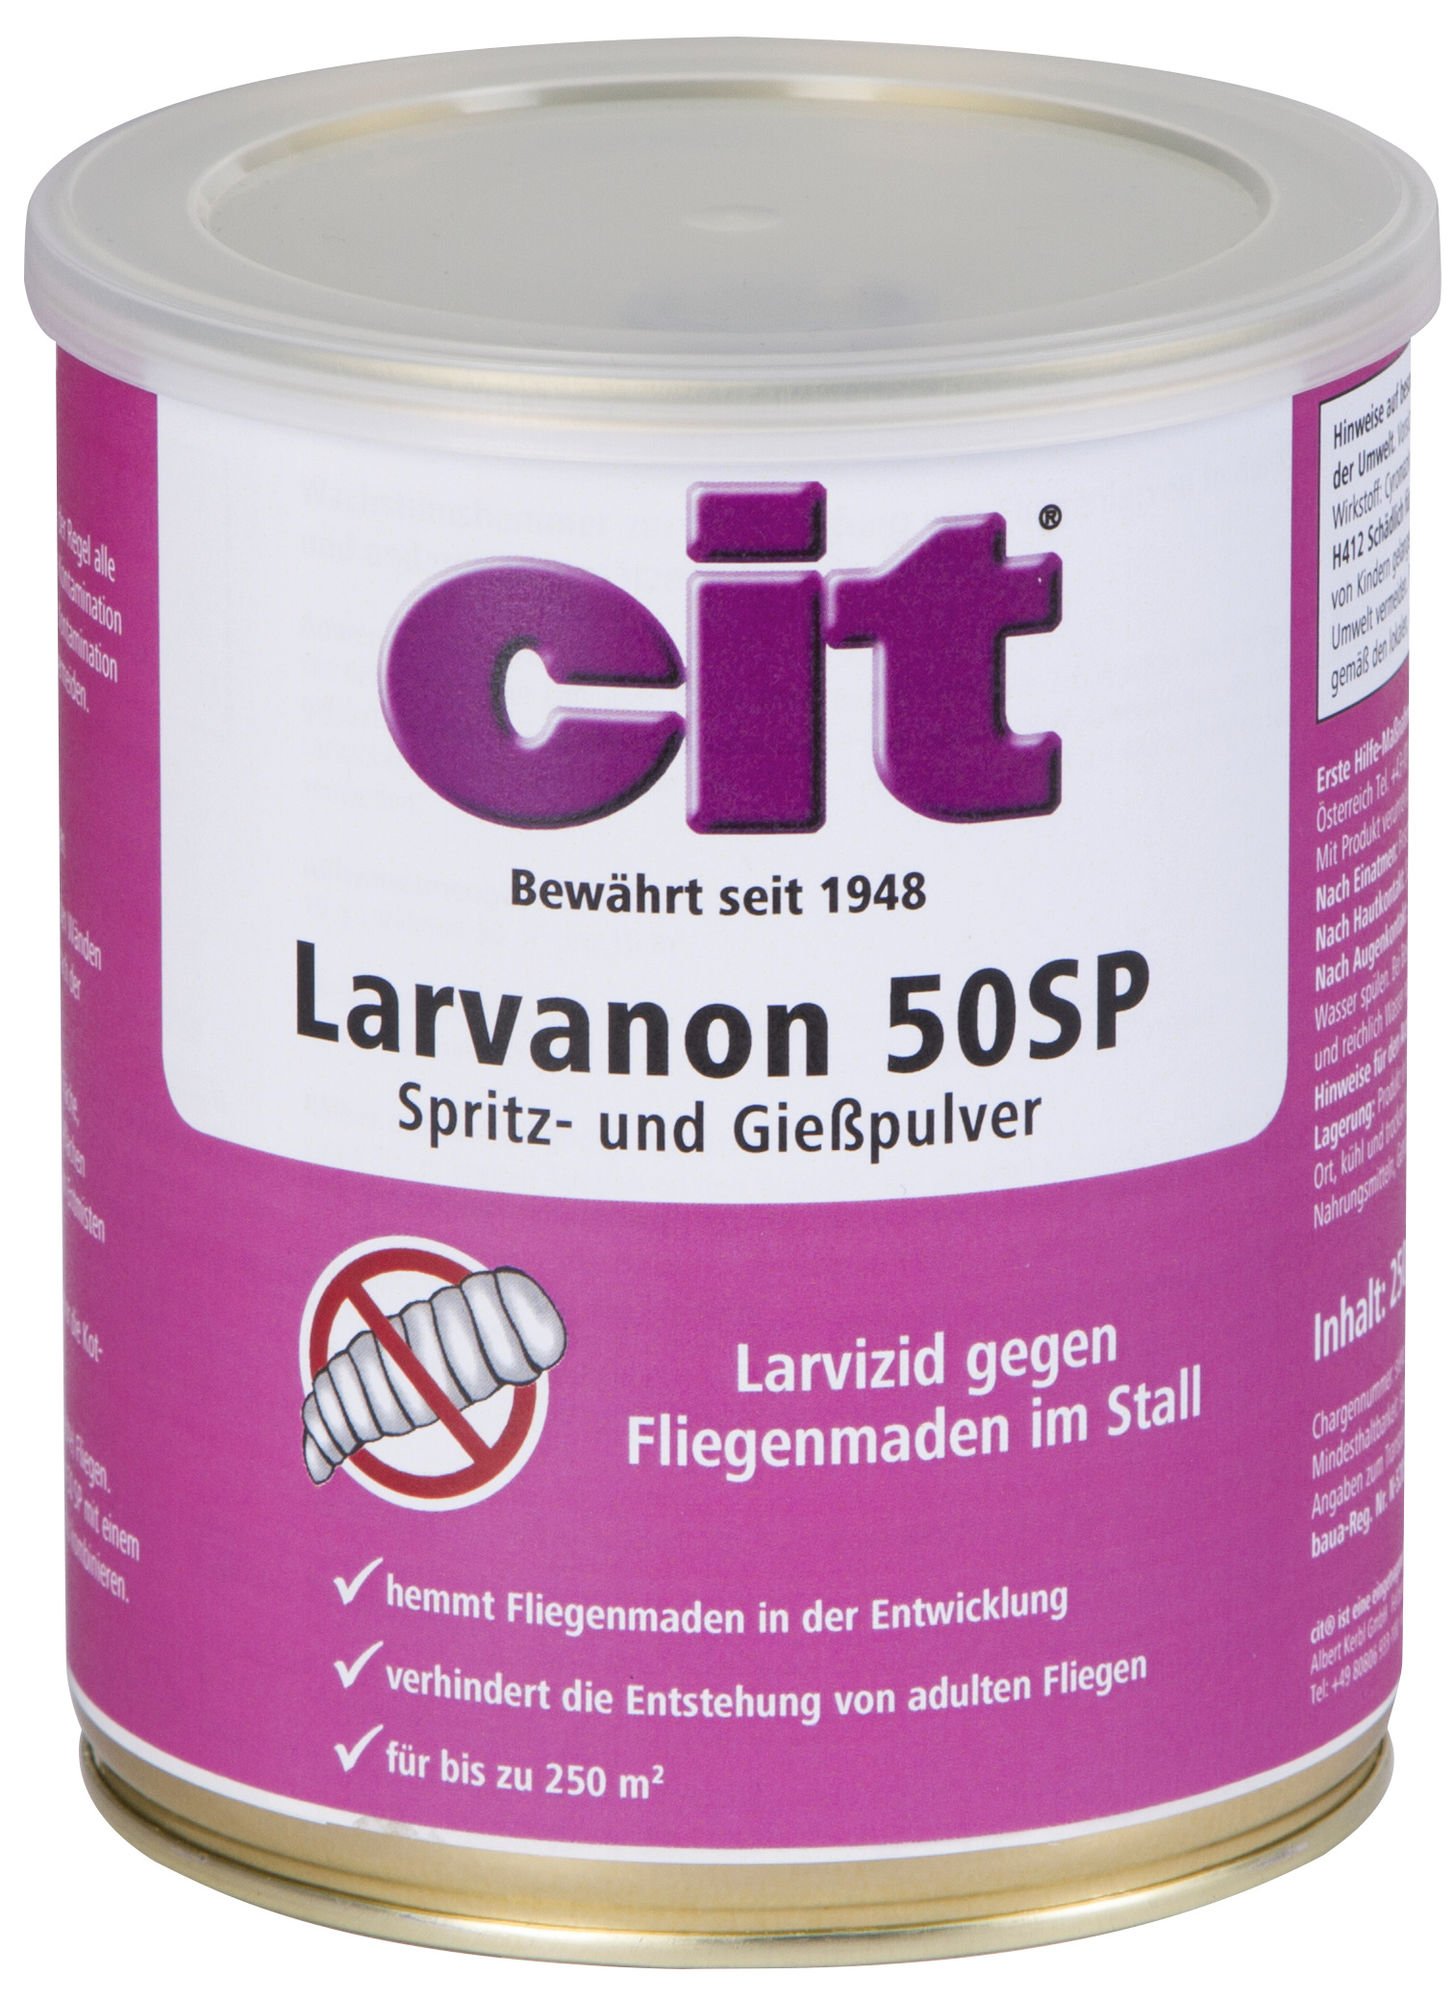 Cit Larvizid Larvanon 50 SG (Spritzpulver), 250 g